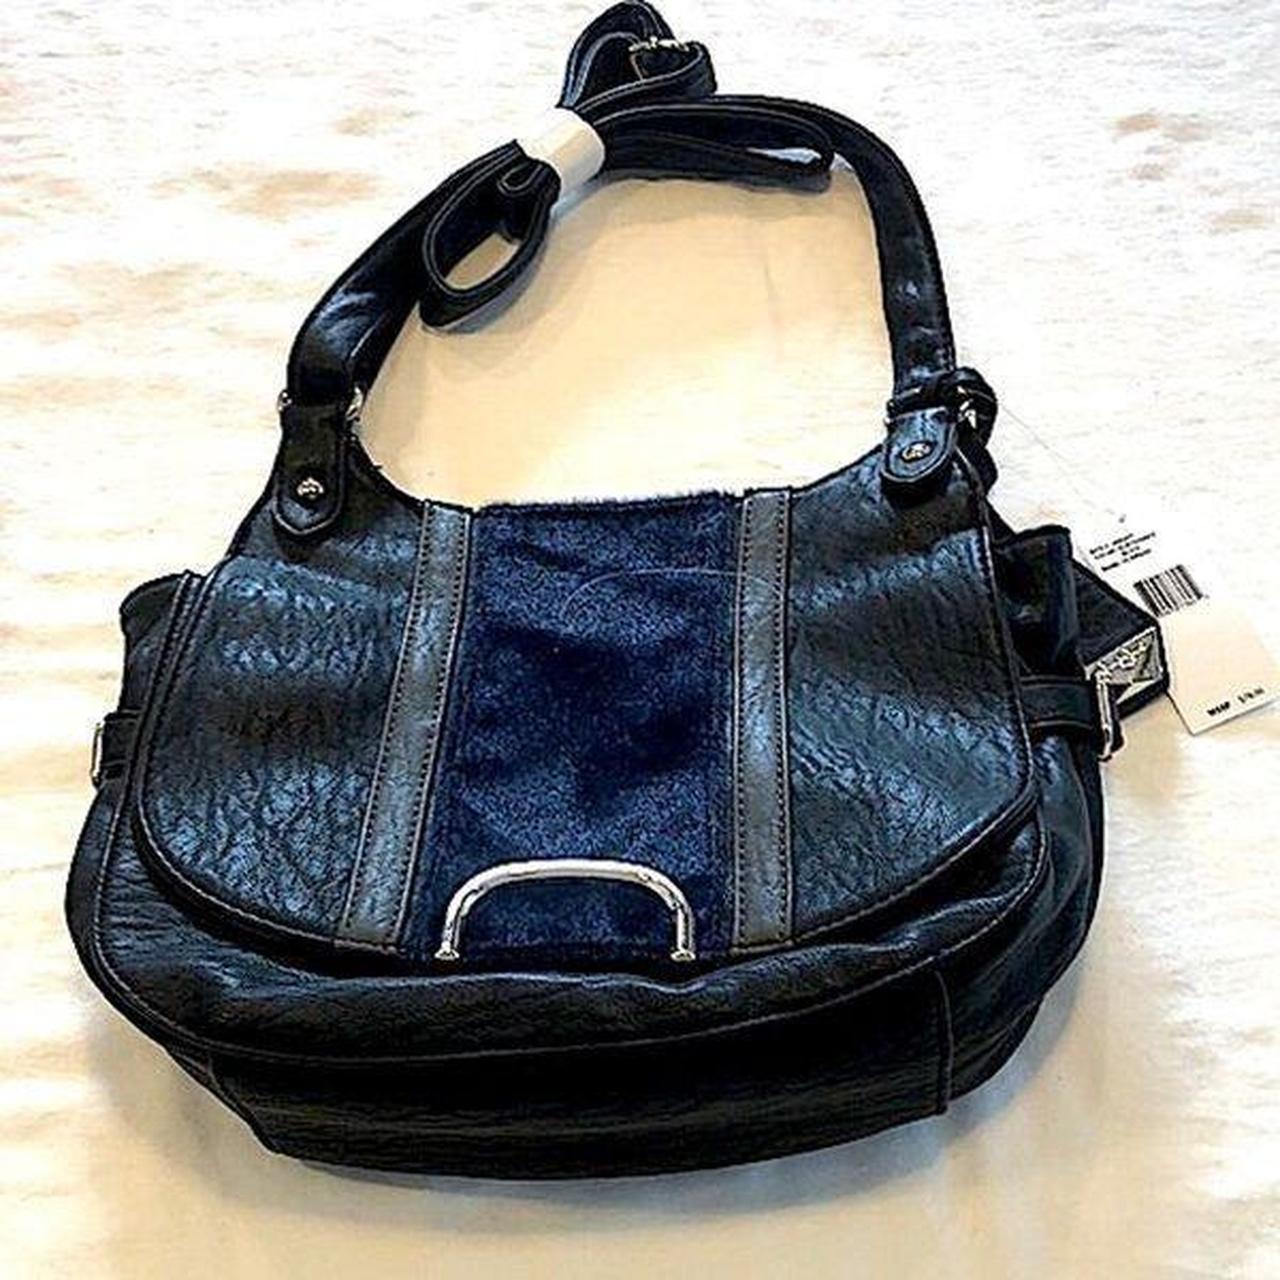 Jessica Simpson | Bags | Jessica Simpson Large Black Leather Totepurse |  Poshmark